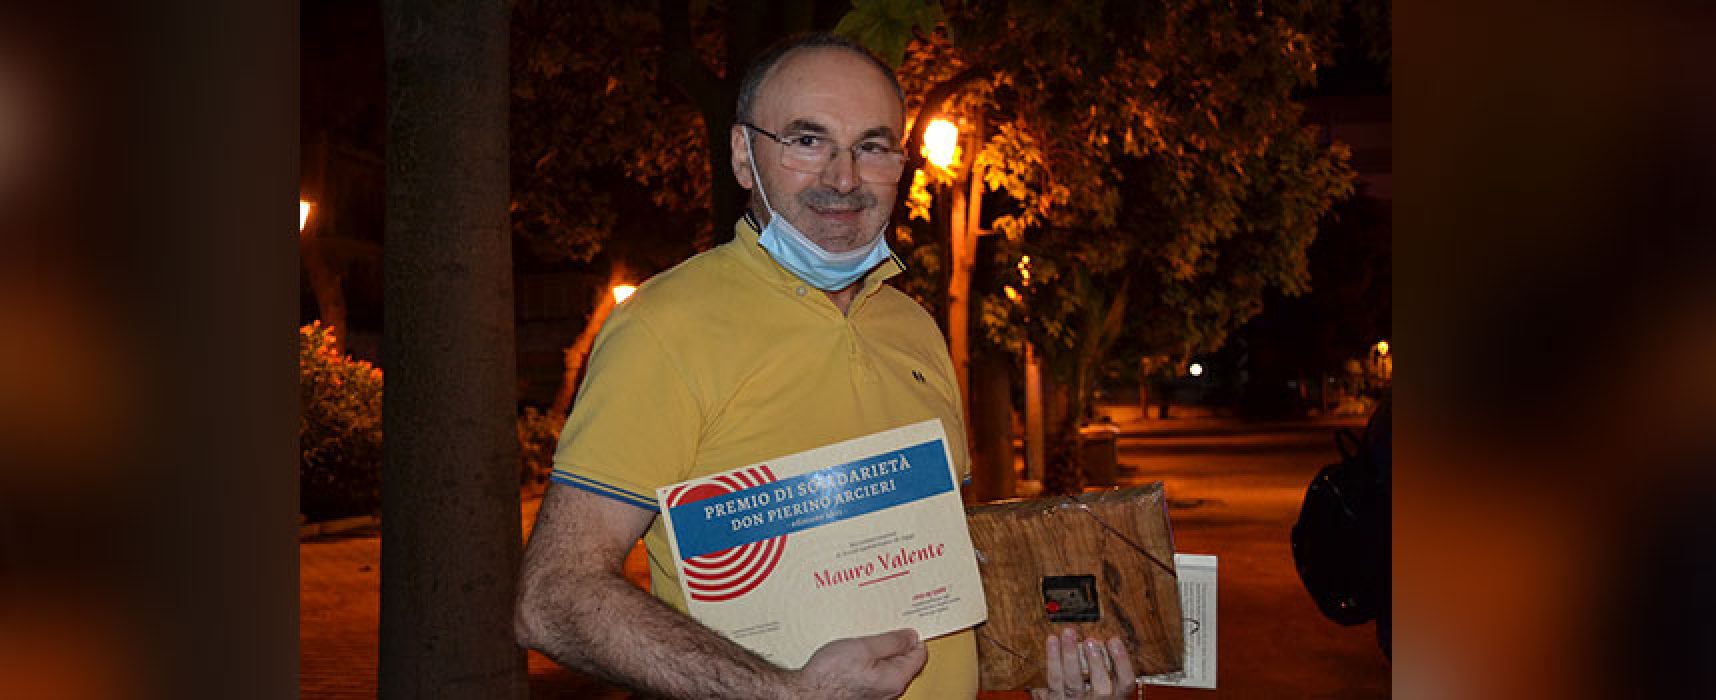 A Mauro Valente il “Premio di Solidarietà don Pierino Arcieri”